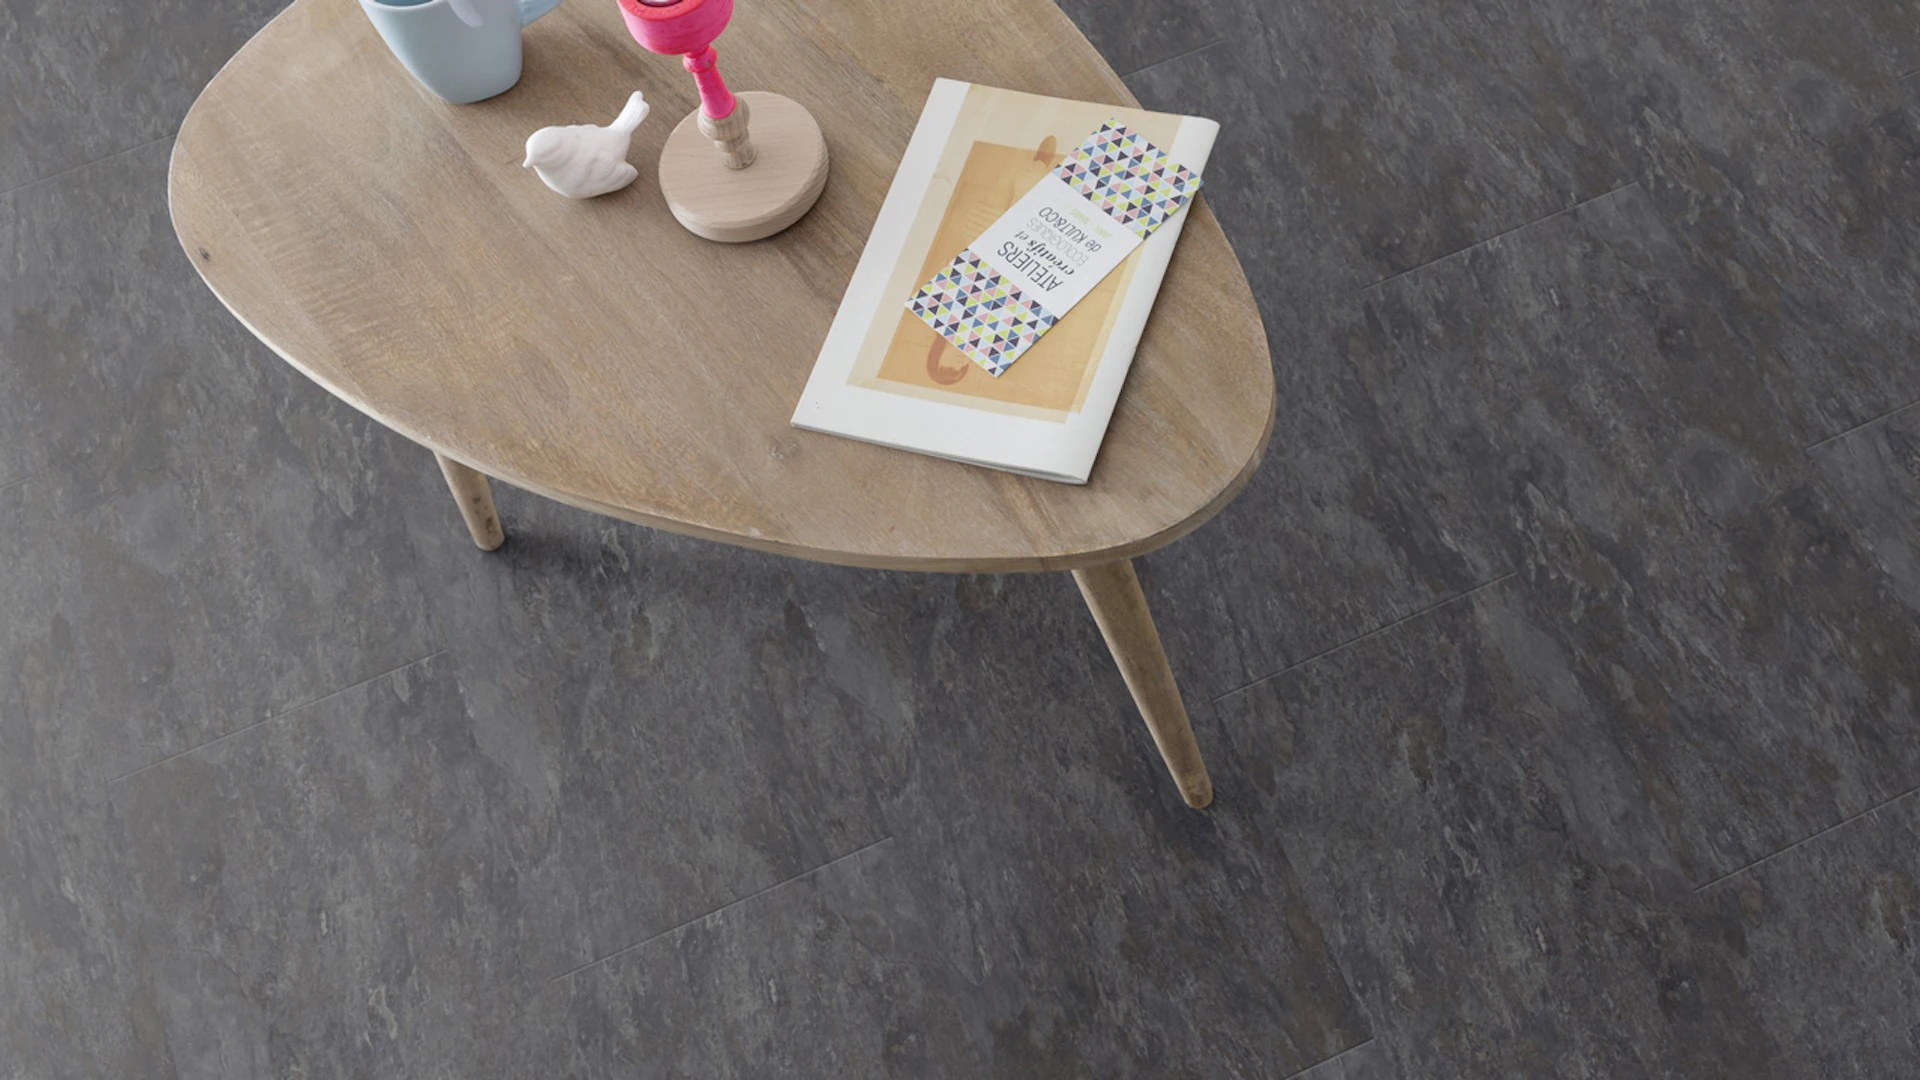 Gerflor vinyl flooring - Senso Natural Night Slate - tile look bevelled self-adhesive